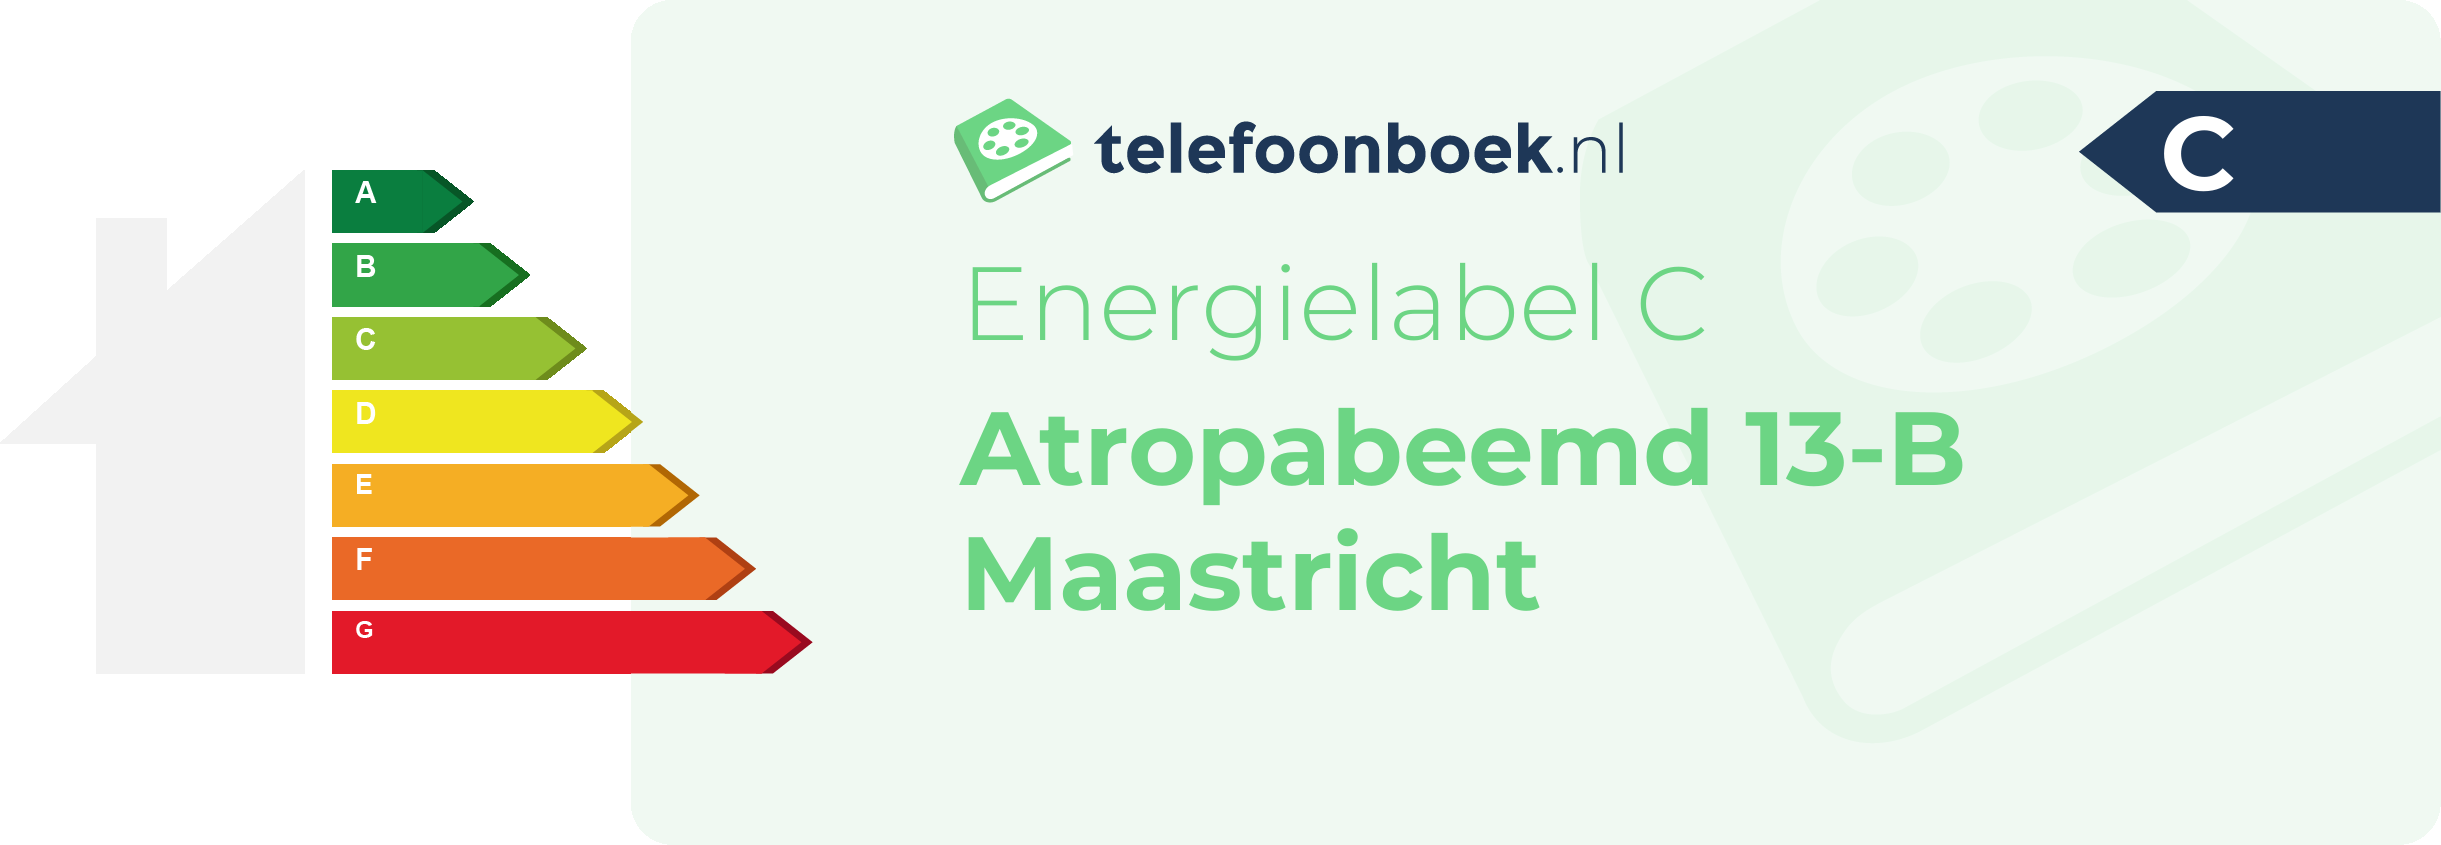 Energielabel Atropabeemd 13-B Maastricht